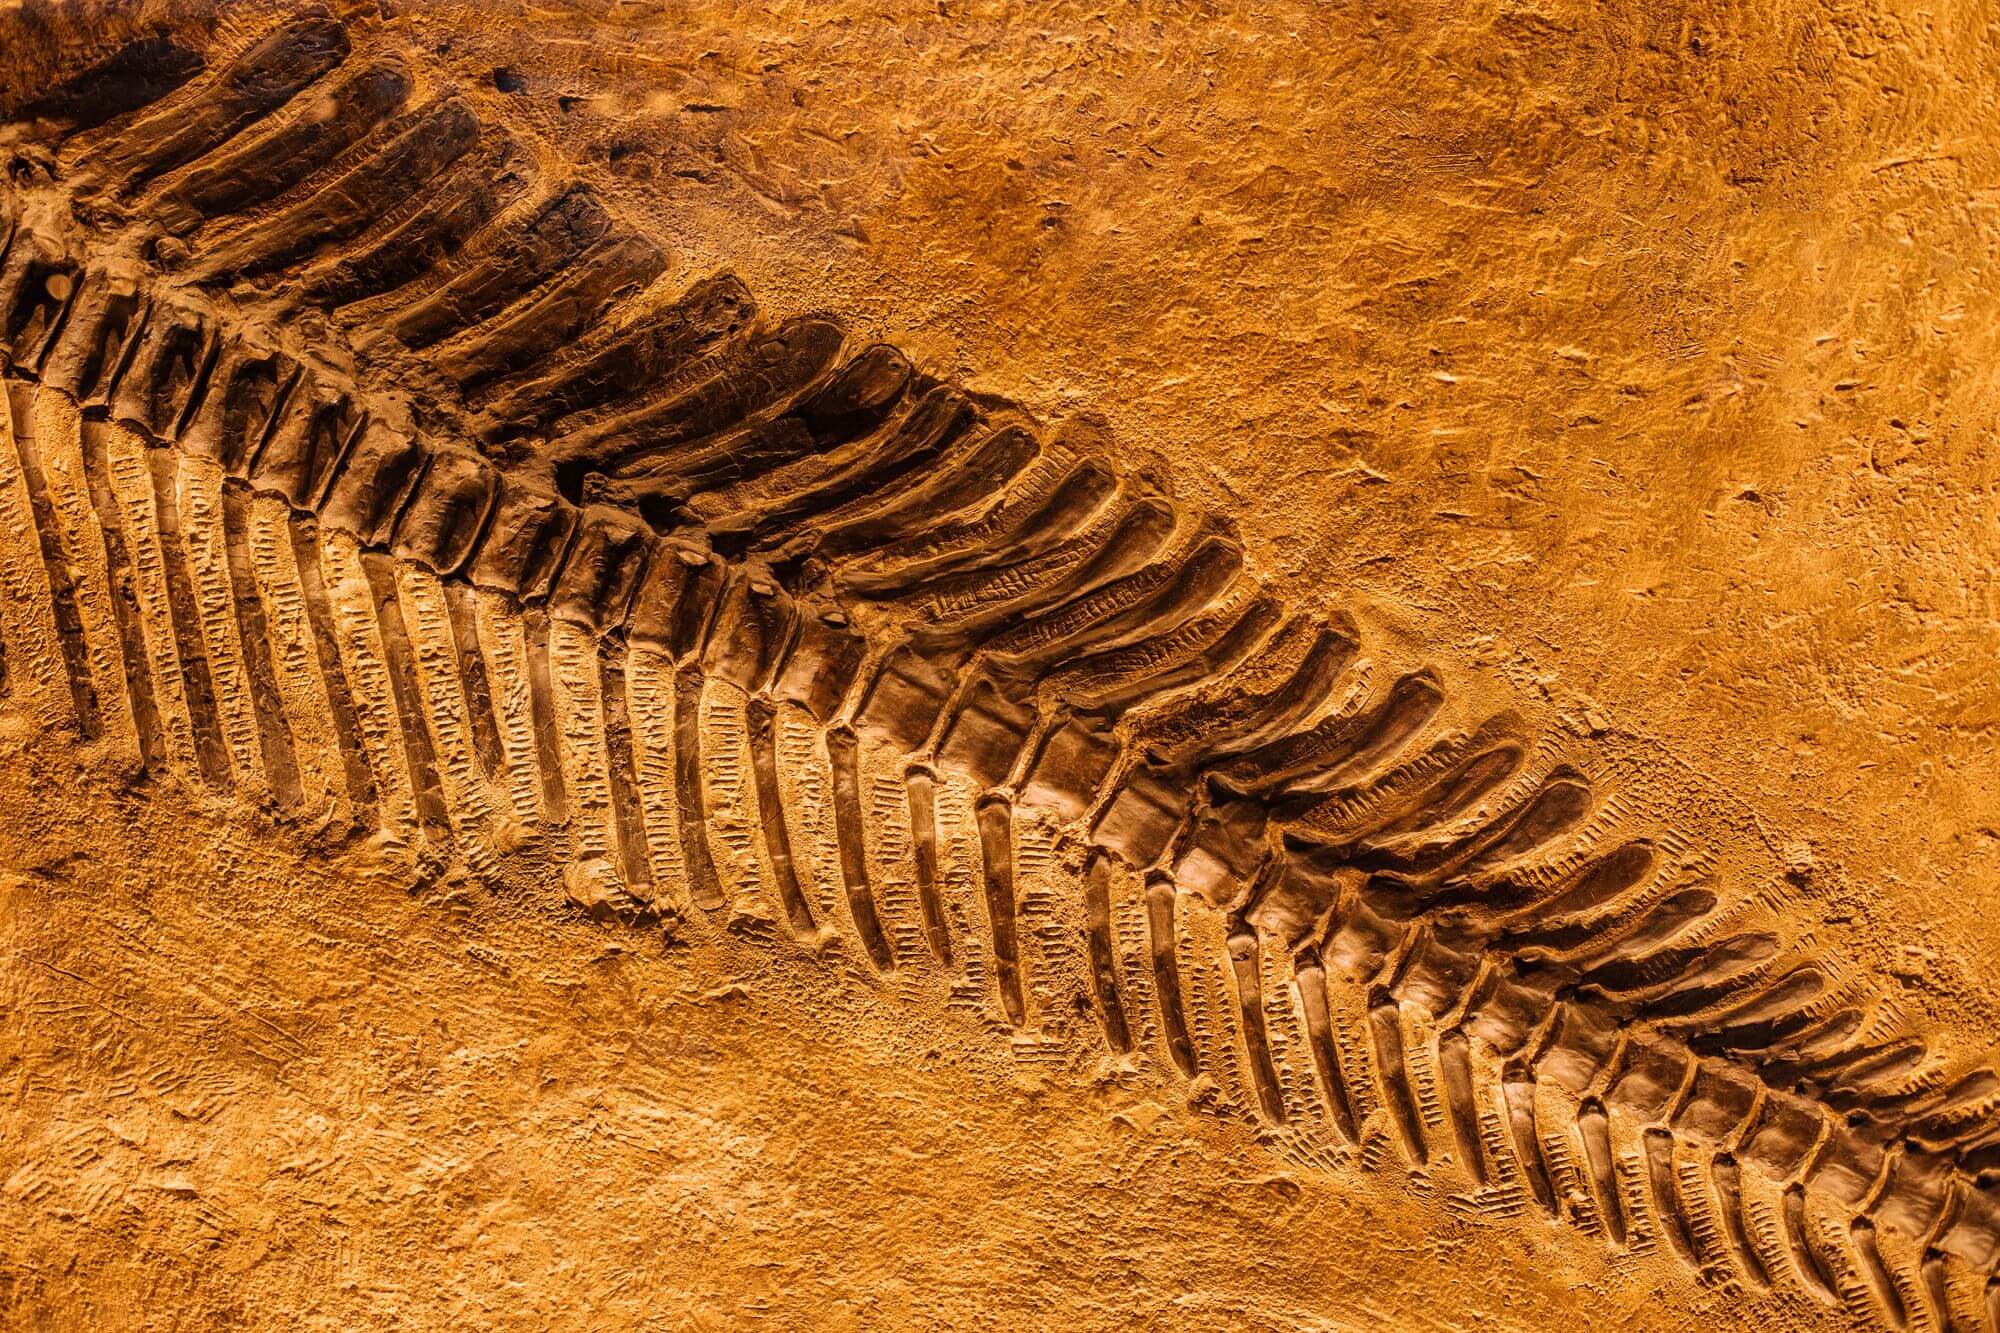 Nález obřího ichtyosaura dokazuje, že evoluce může být extrémně rychlá